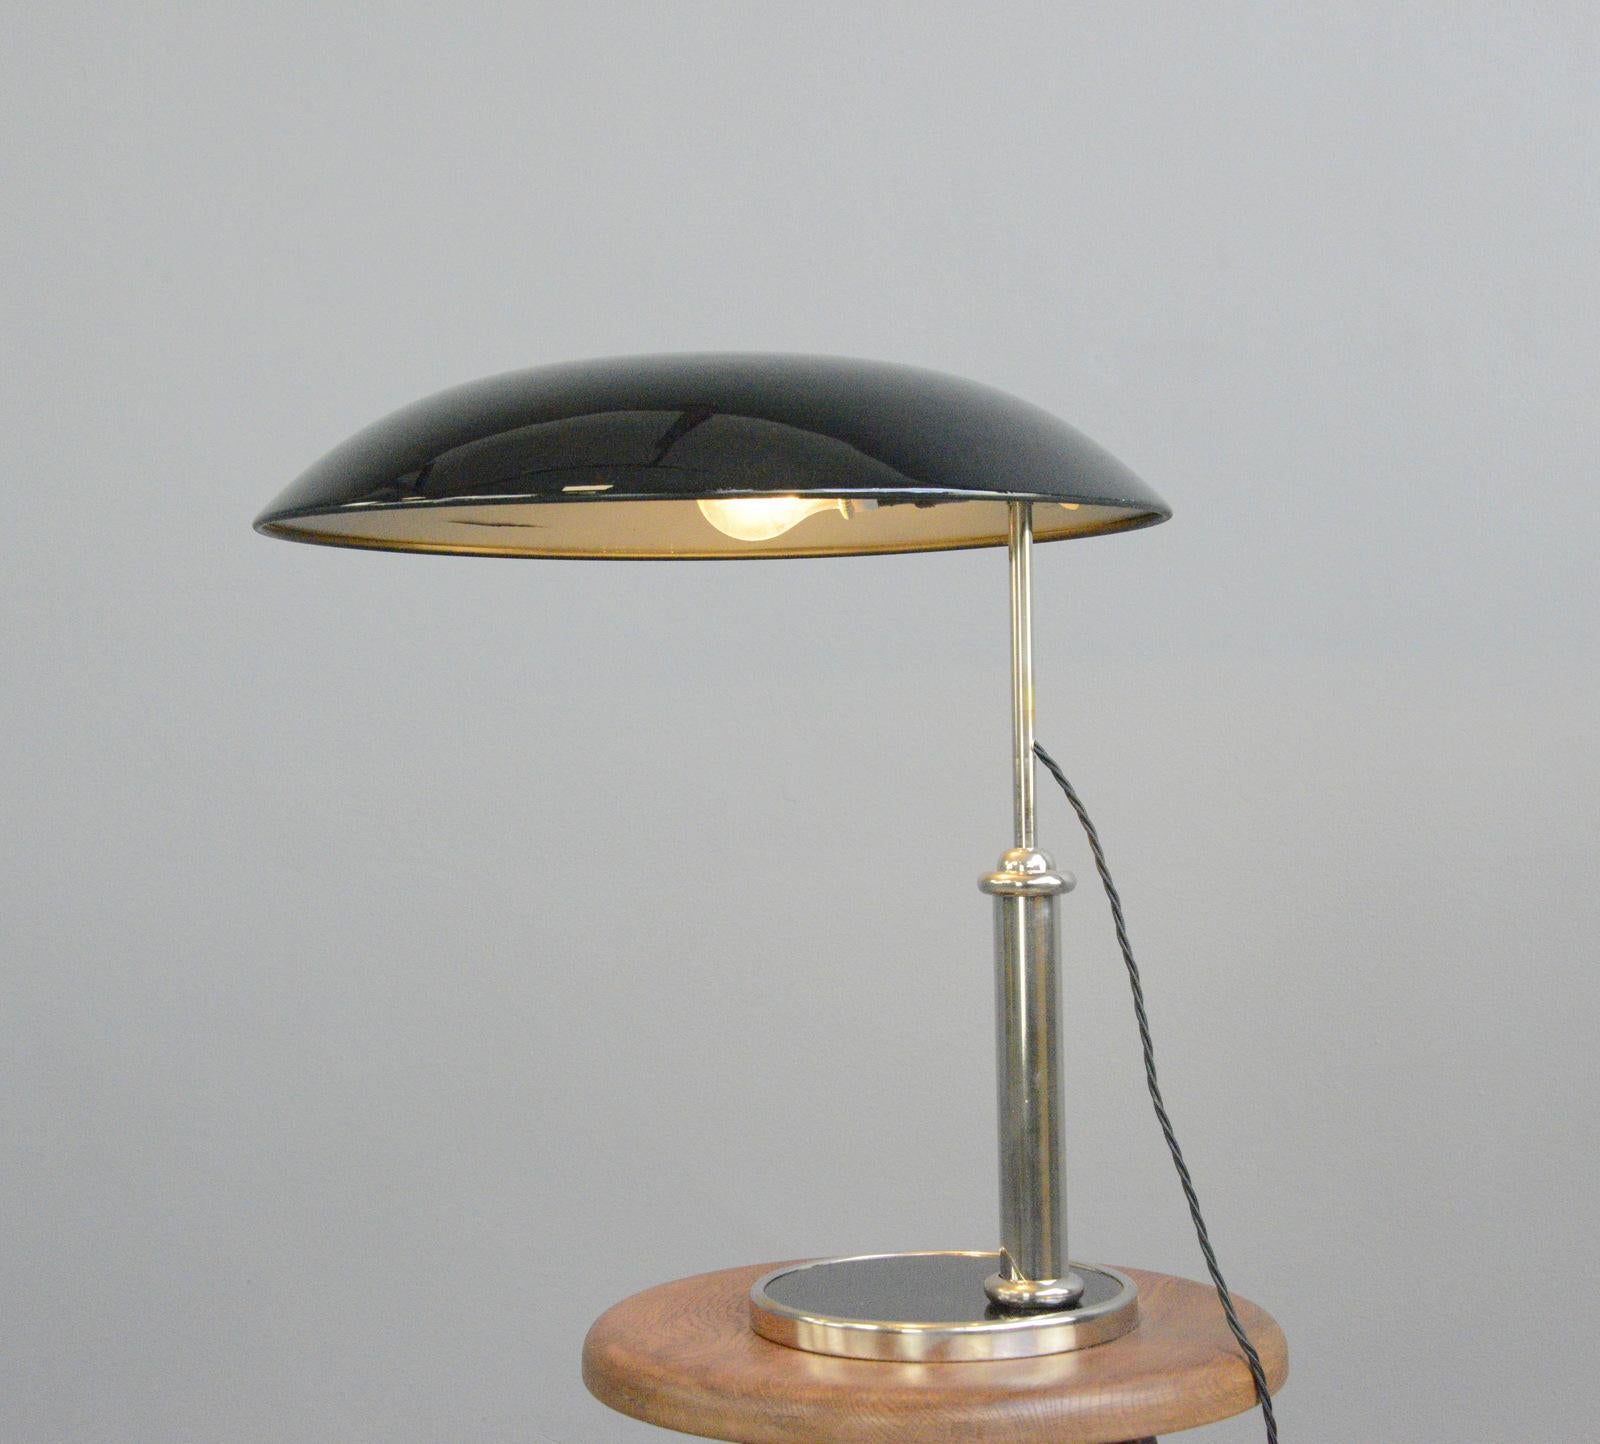 German Bauhaus Table Lamp By Hala Circa 1930s